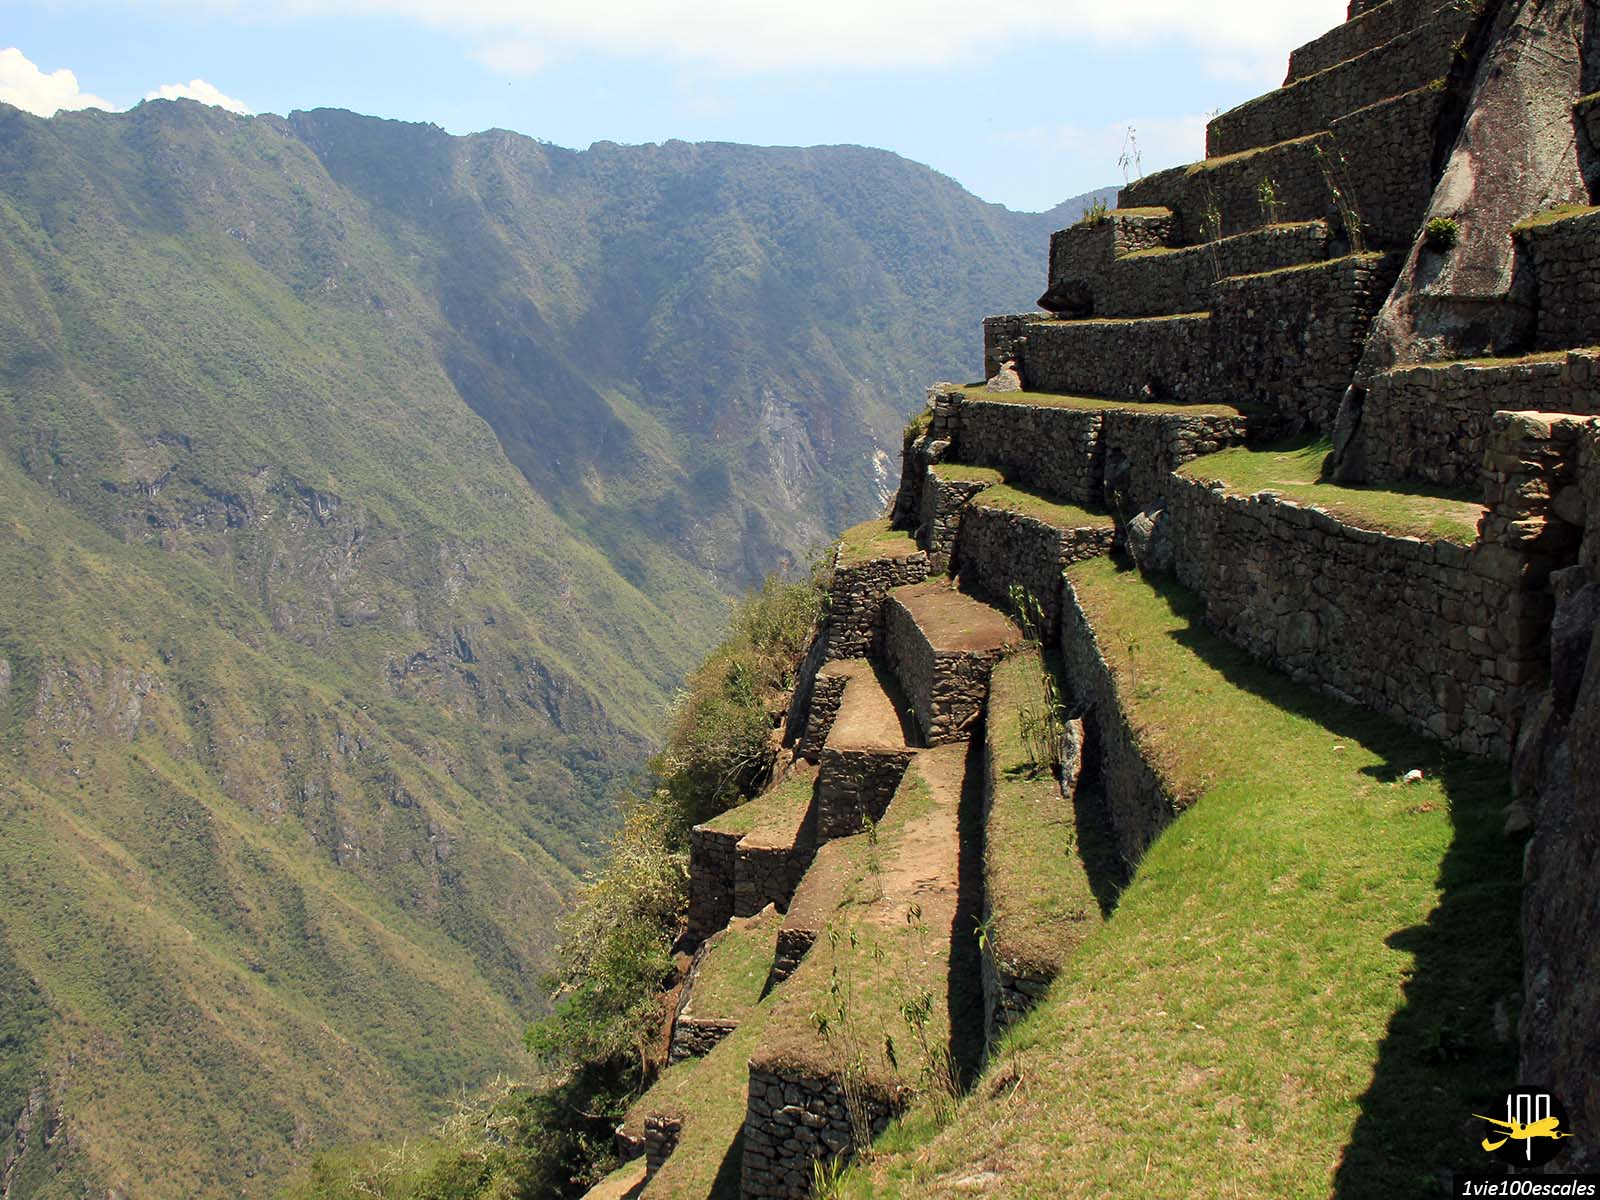 Un endroit envoûtant, unique, mystique… Immanquable ! Le Machu Picchu, dans la Vallée Sacrée